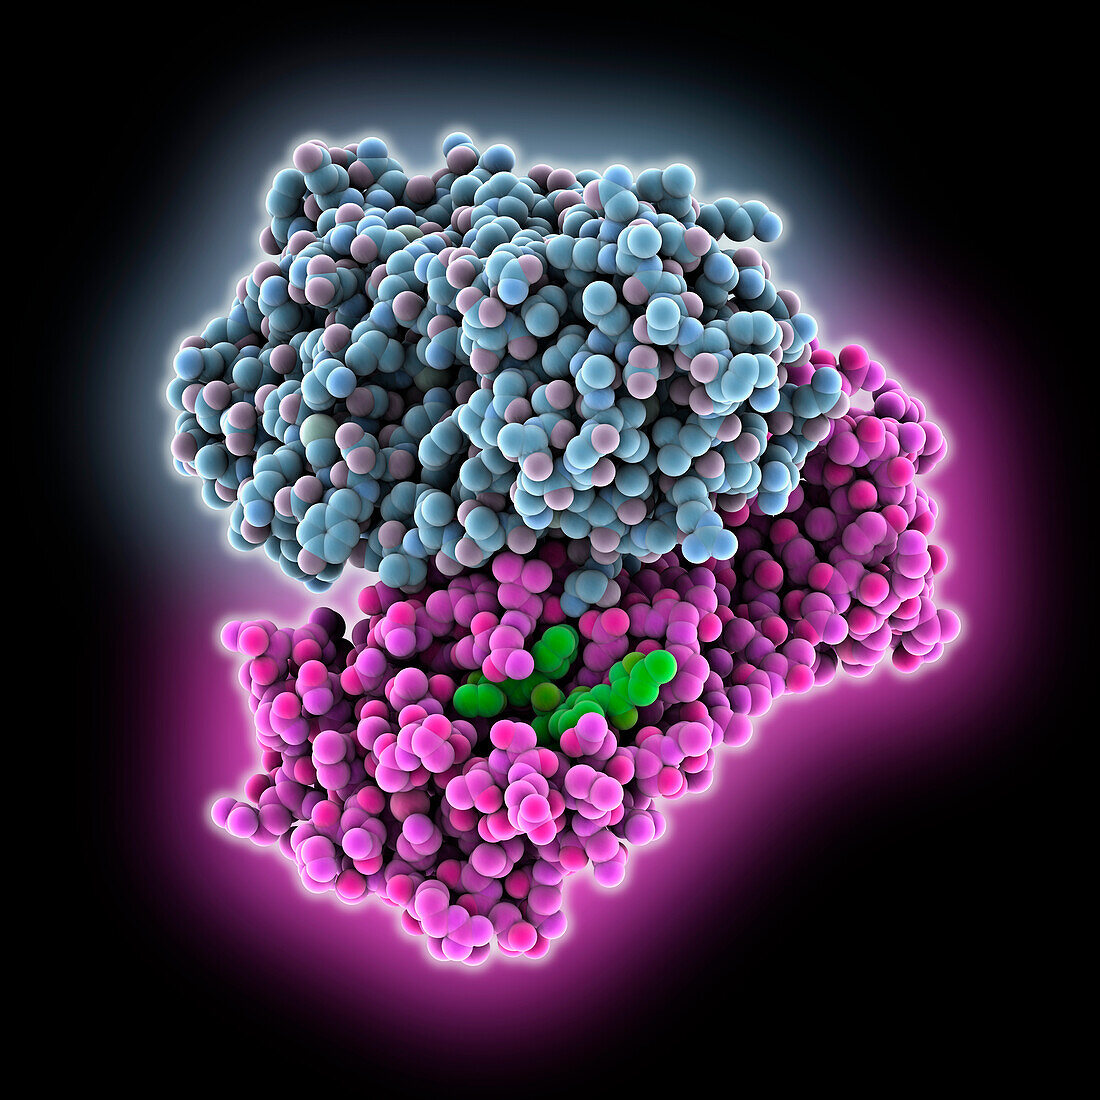 SARS-CoV-2 main protease complex, illustration